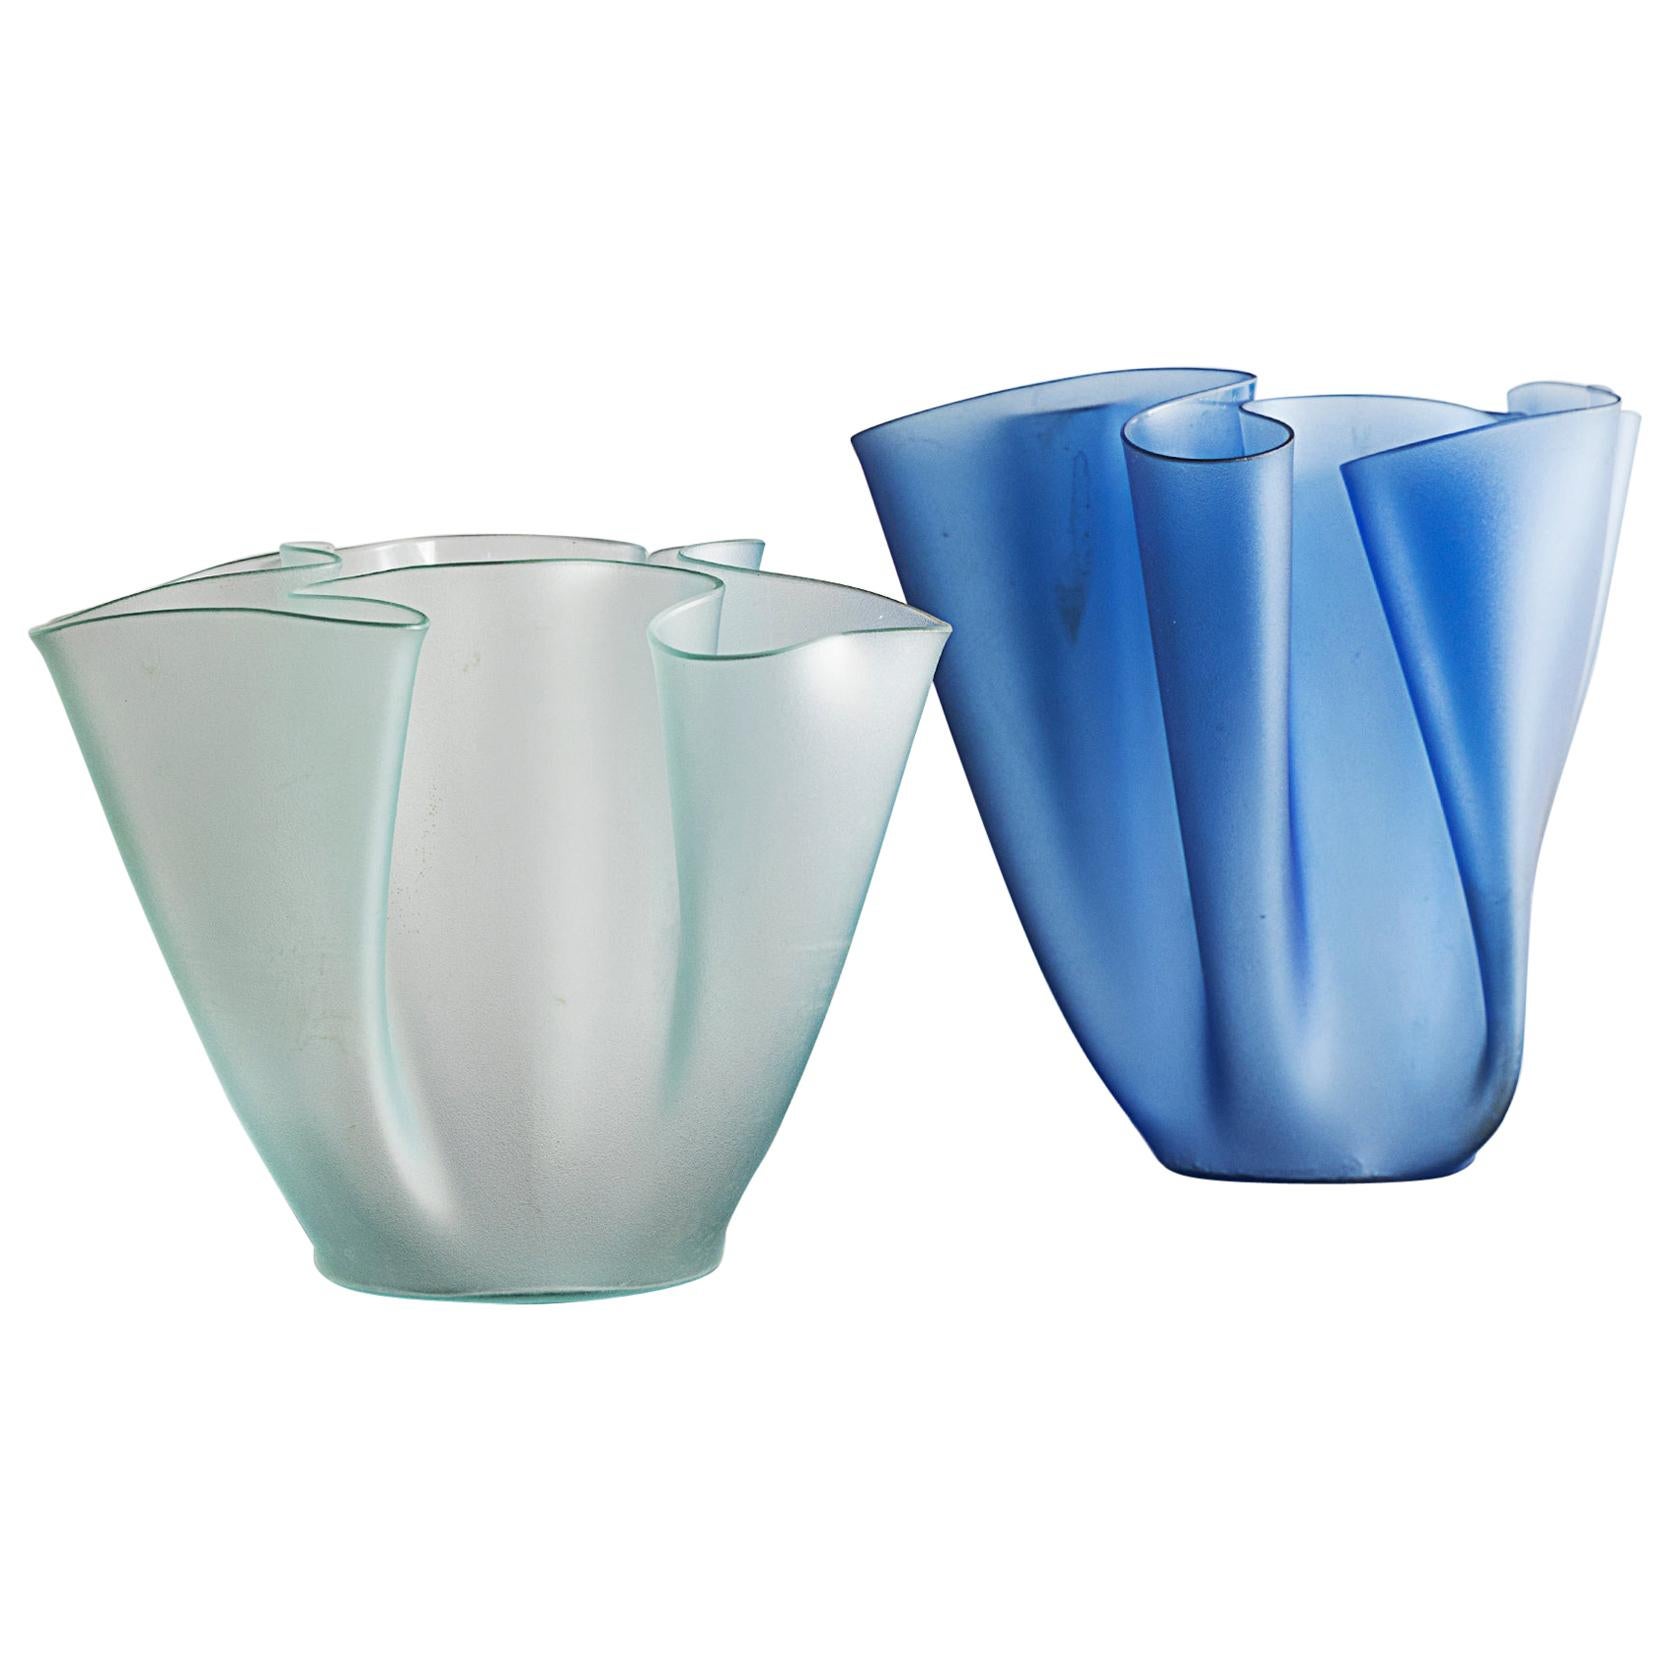 Pietro Chiesa for Fontana Arte Two "Cartoccio" Glass Vases Designed in 1935